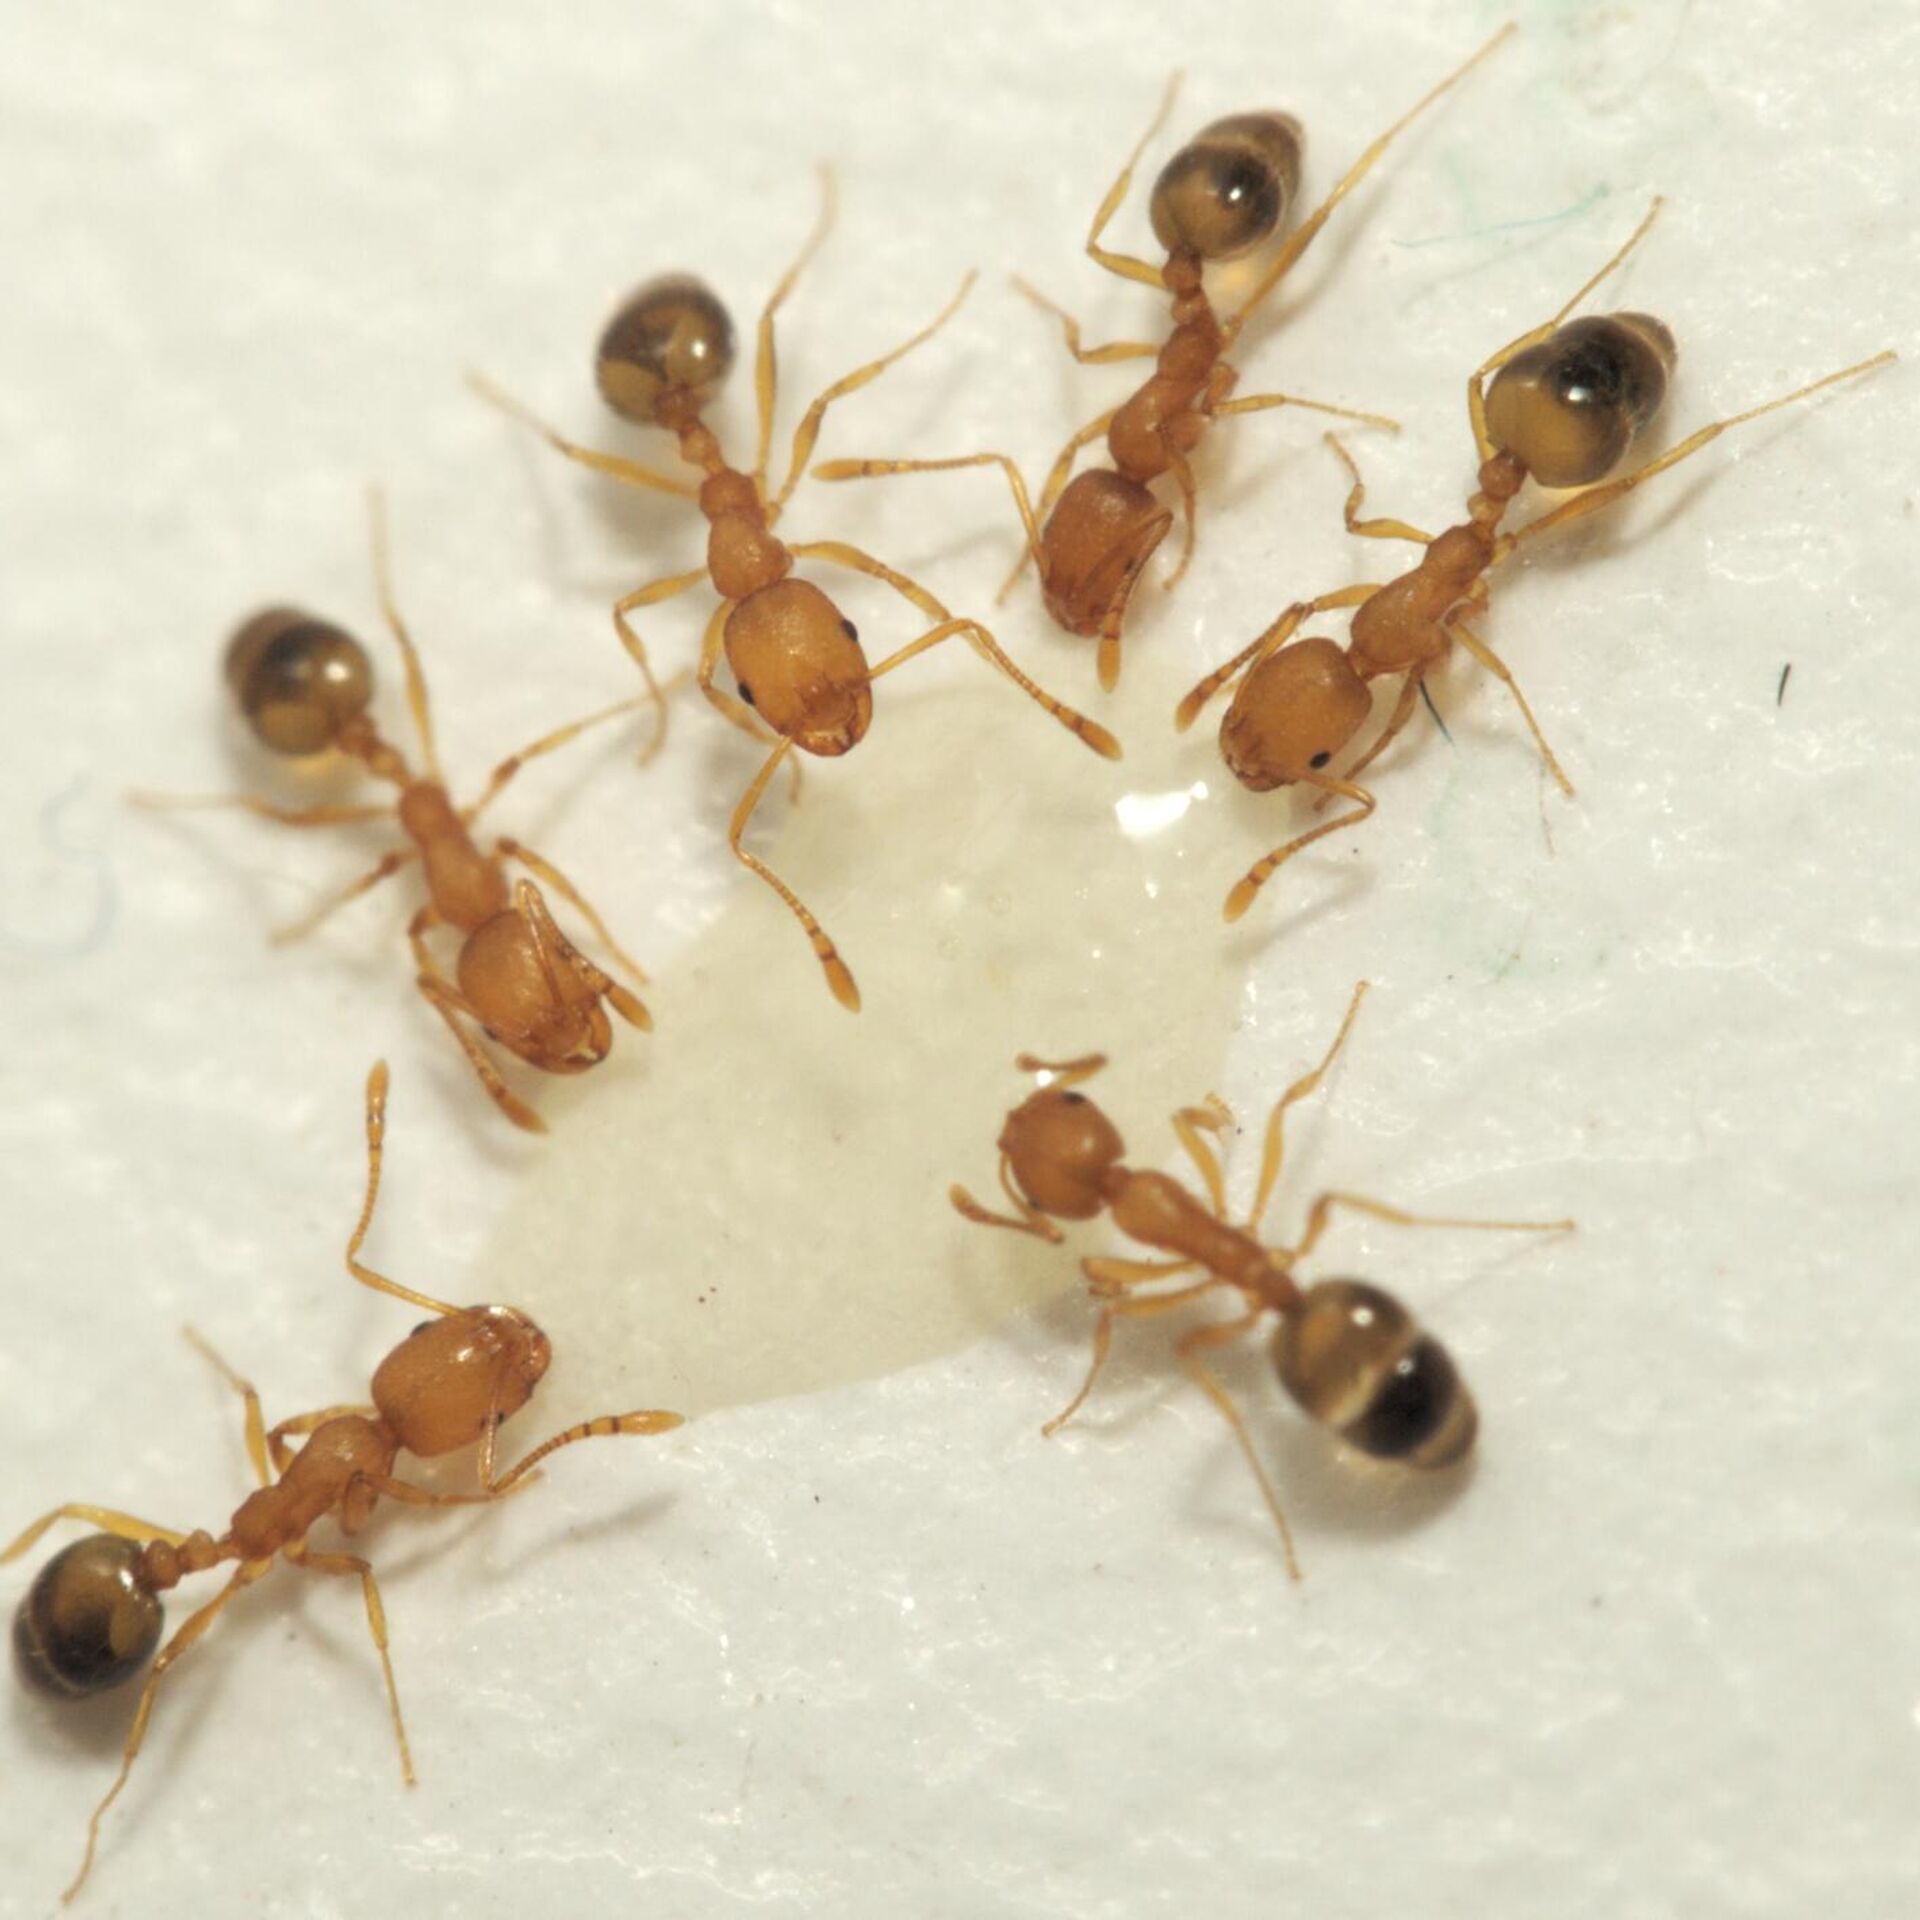 Как избавиться от муравьев в квартире навсегда